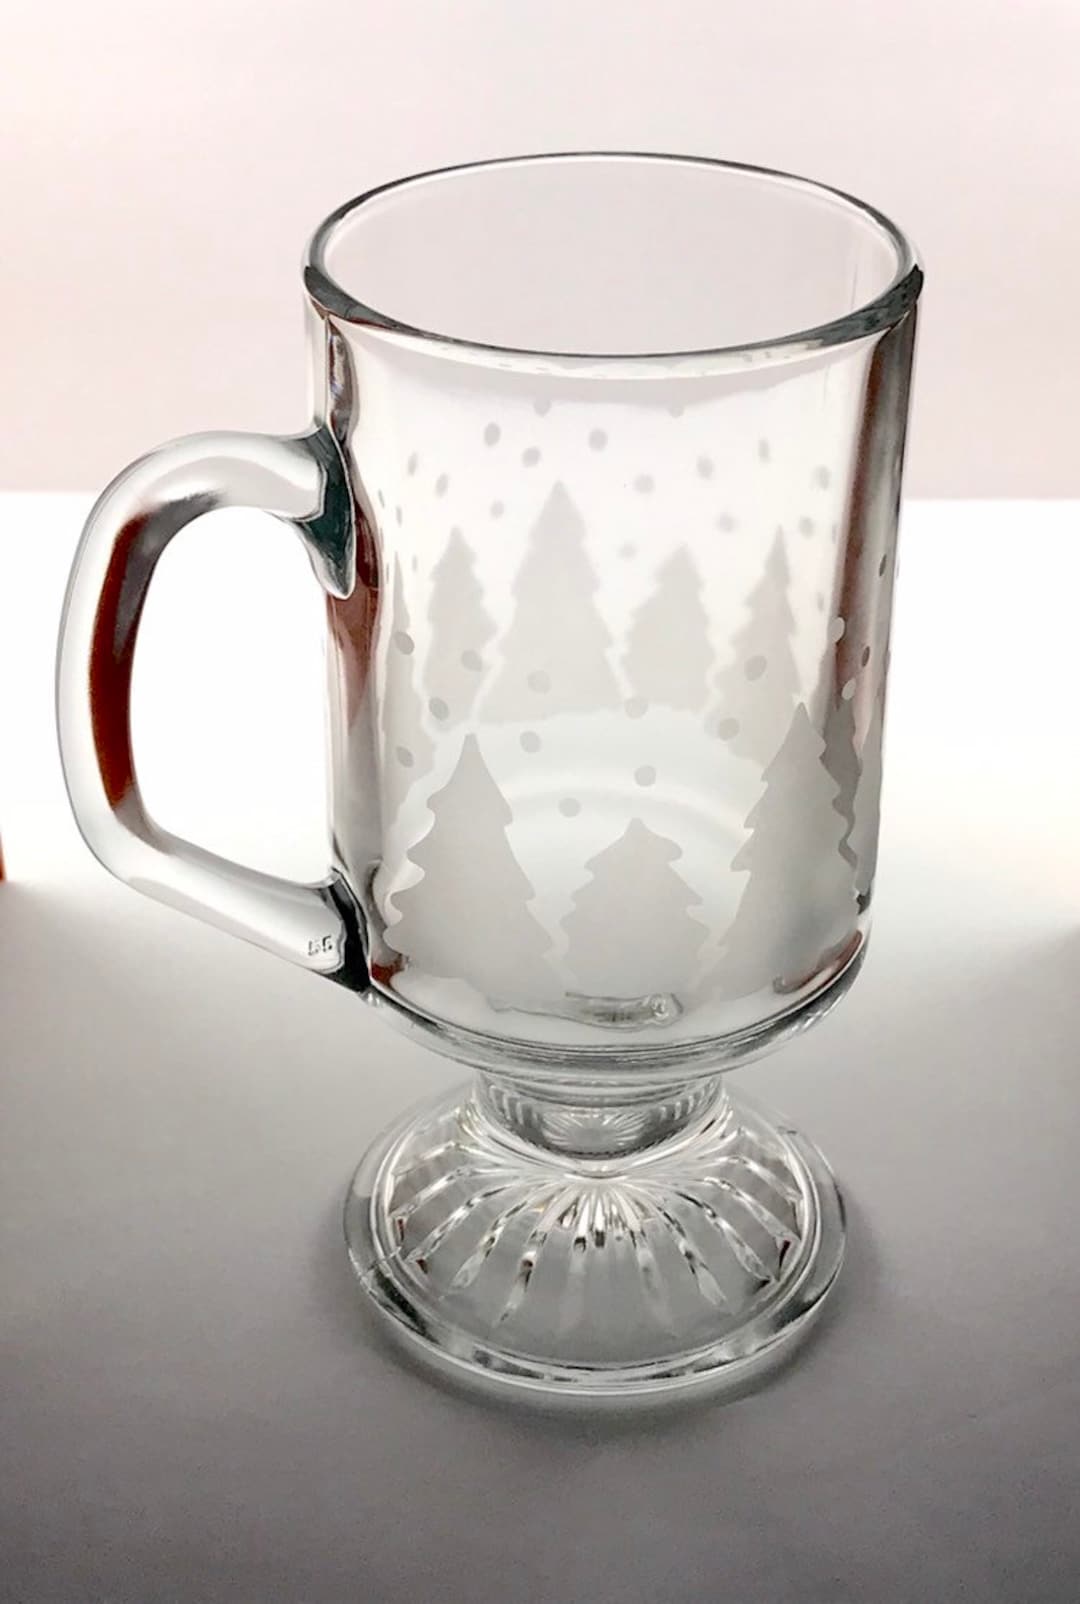 Grey Snowflake Mug Aesthetic Collection Design For Christmas - Teeholly